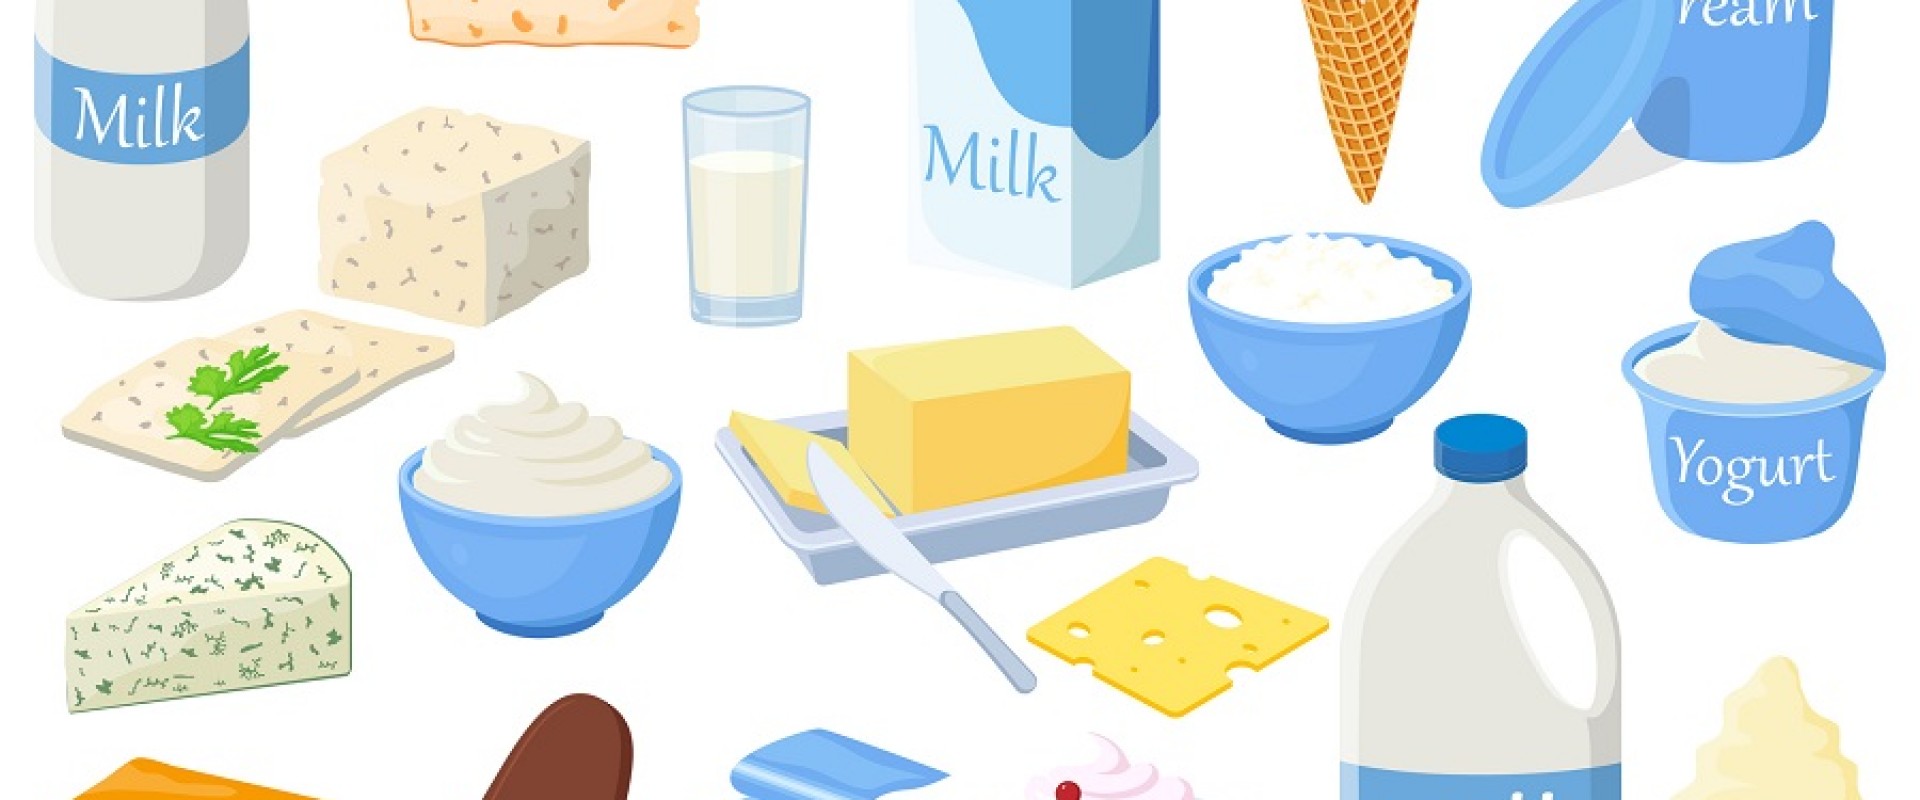 Молочные продукты ребенку 2 года. Молочные продукты для детей. Молочные продукты карточки для детей. Молочные продукты картинки для детей в детском саду. Молочные продукты картинки для детей с названиями.